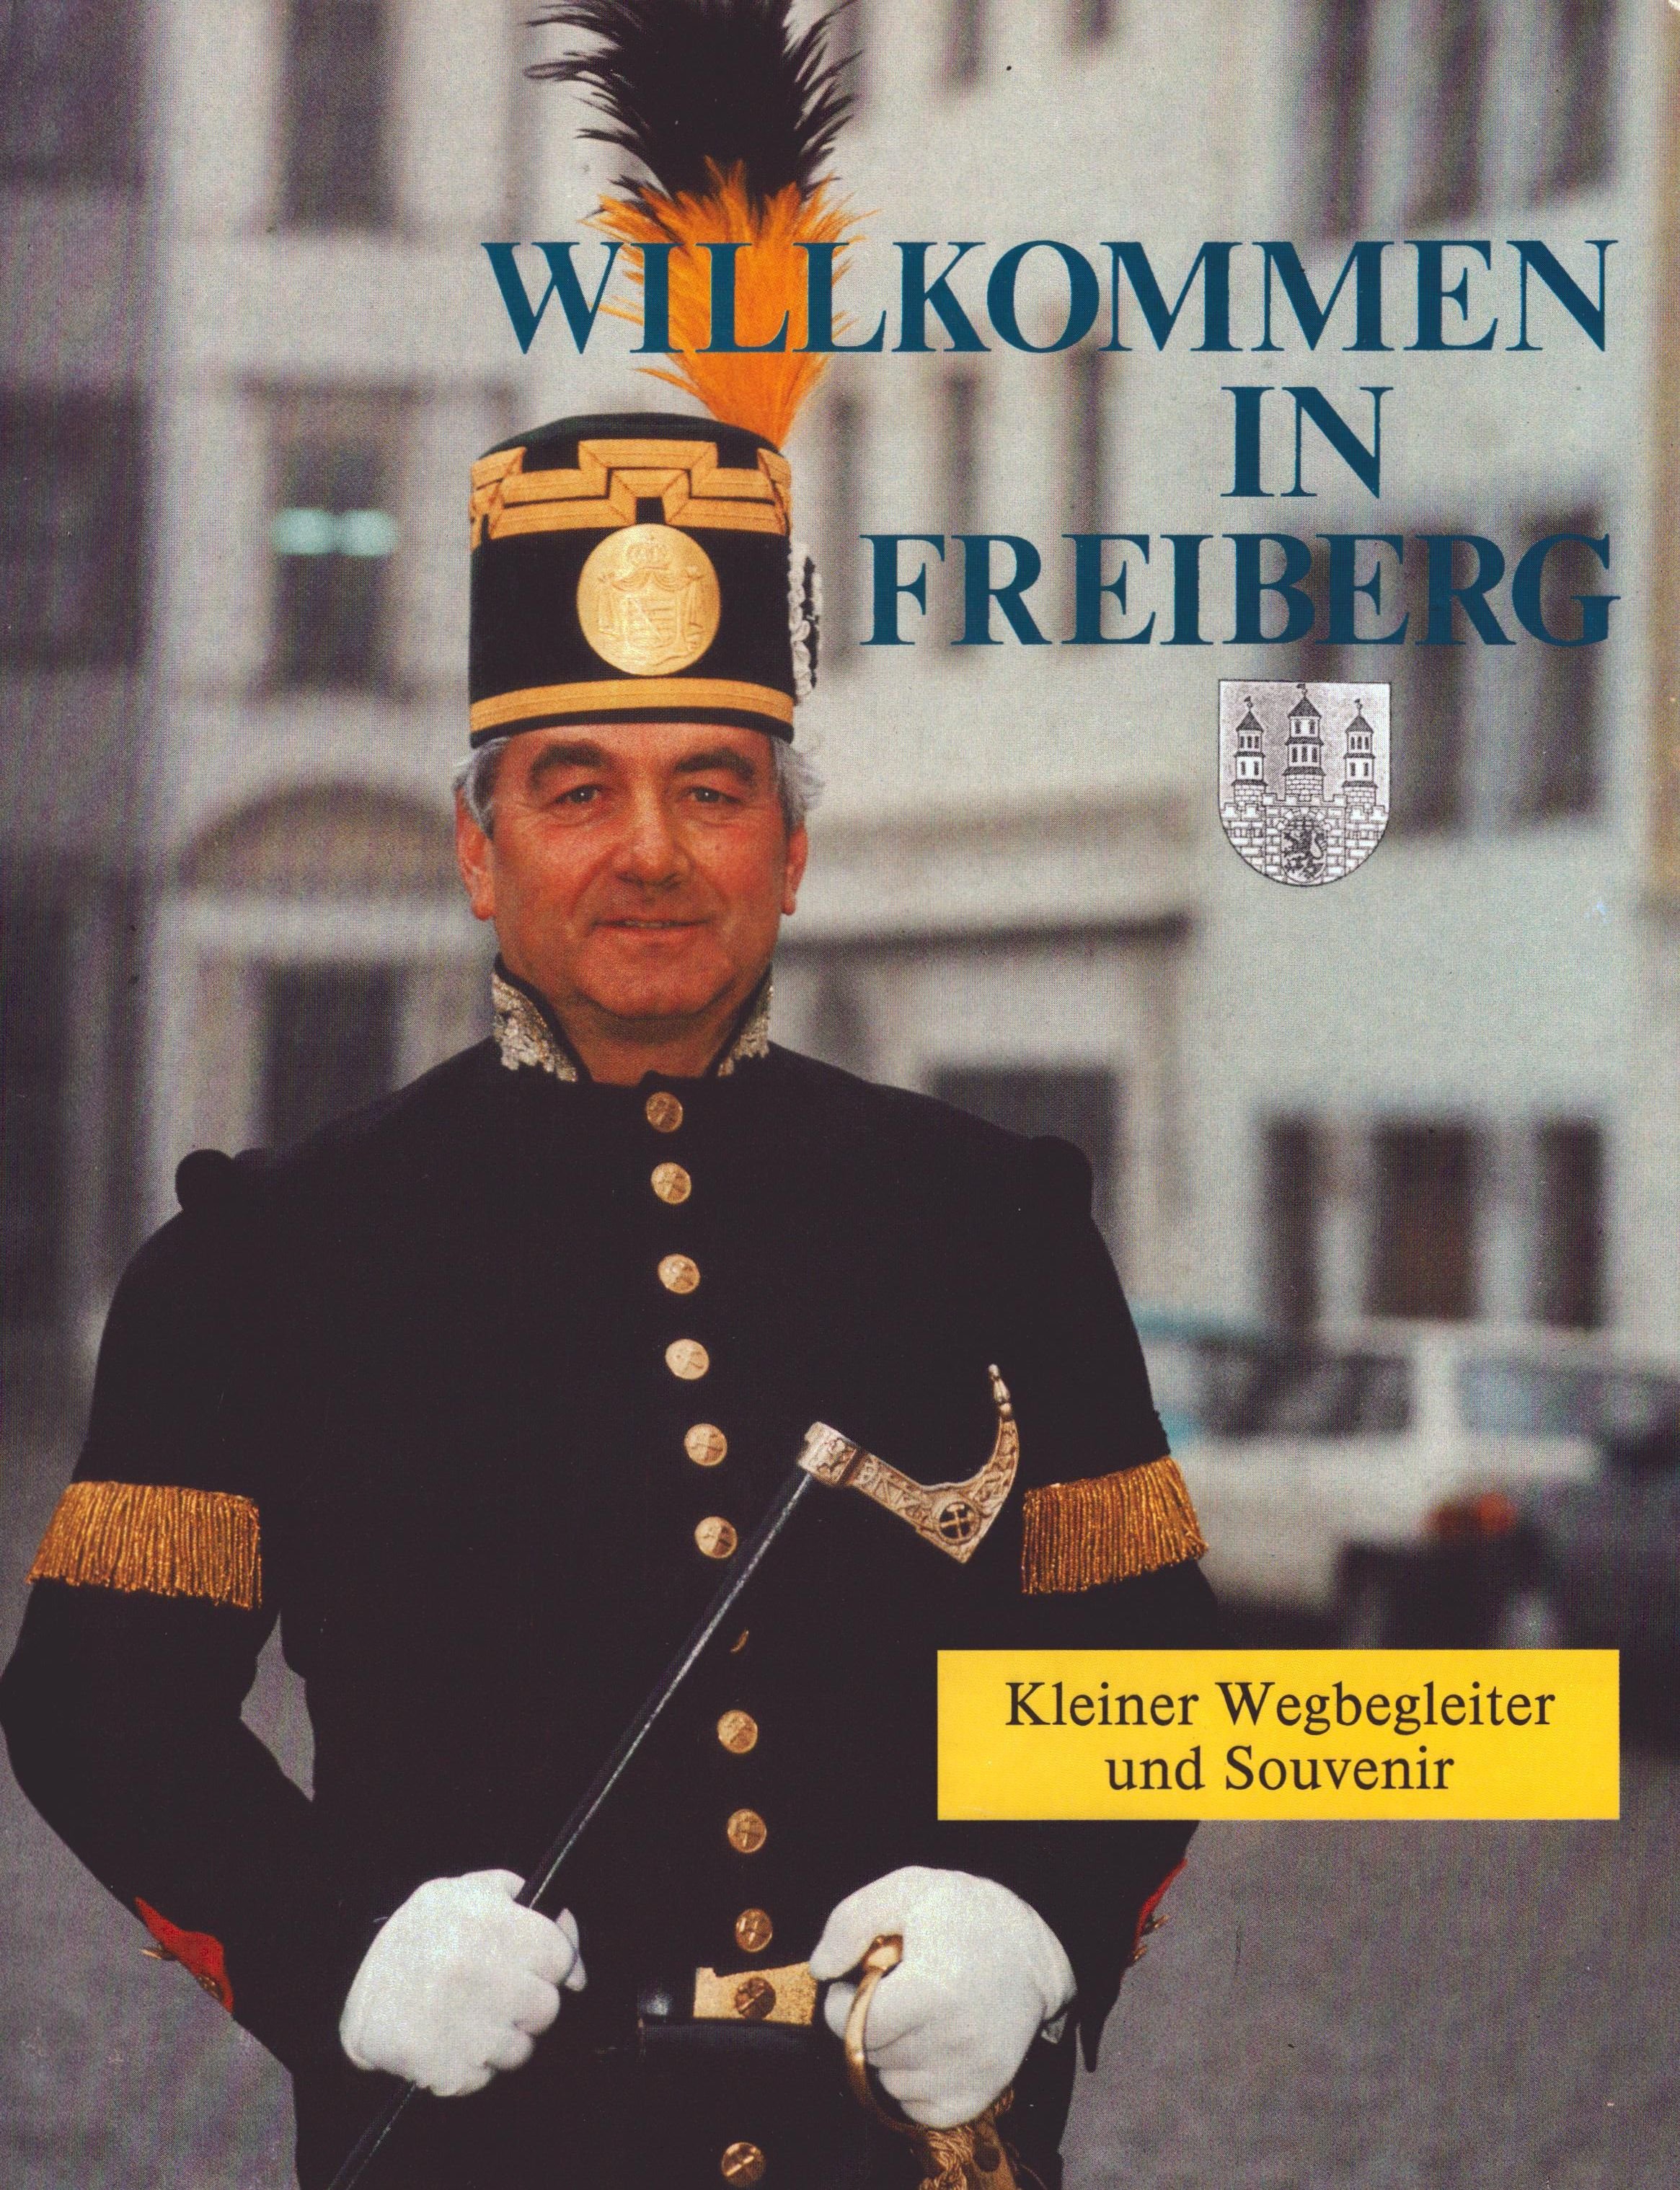 Wilkommen in Freiberg - Kleiner Wegbegleiter und Souvenir (Archiv SAXONIA-FREIBERG-STIFTUNG CC BY-NC-SA)